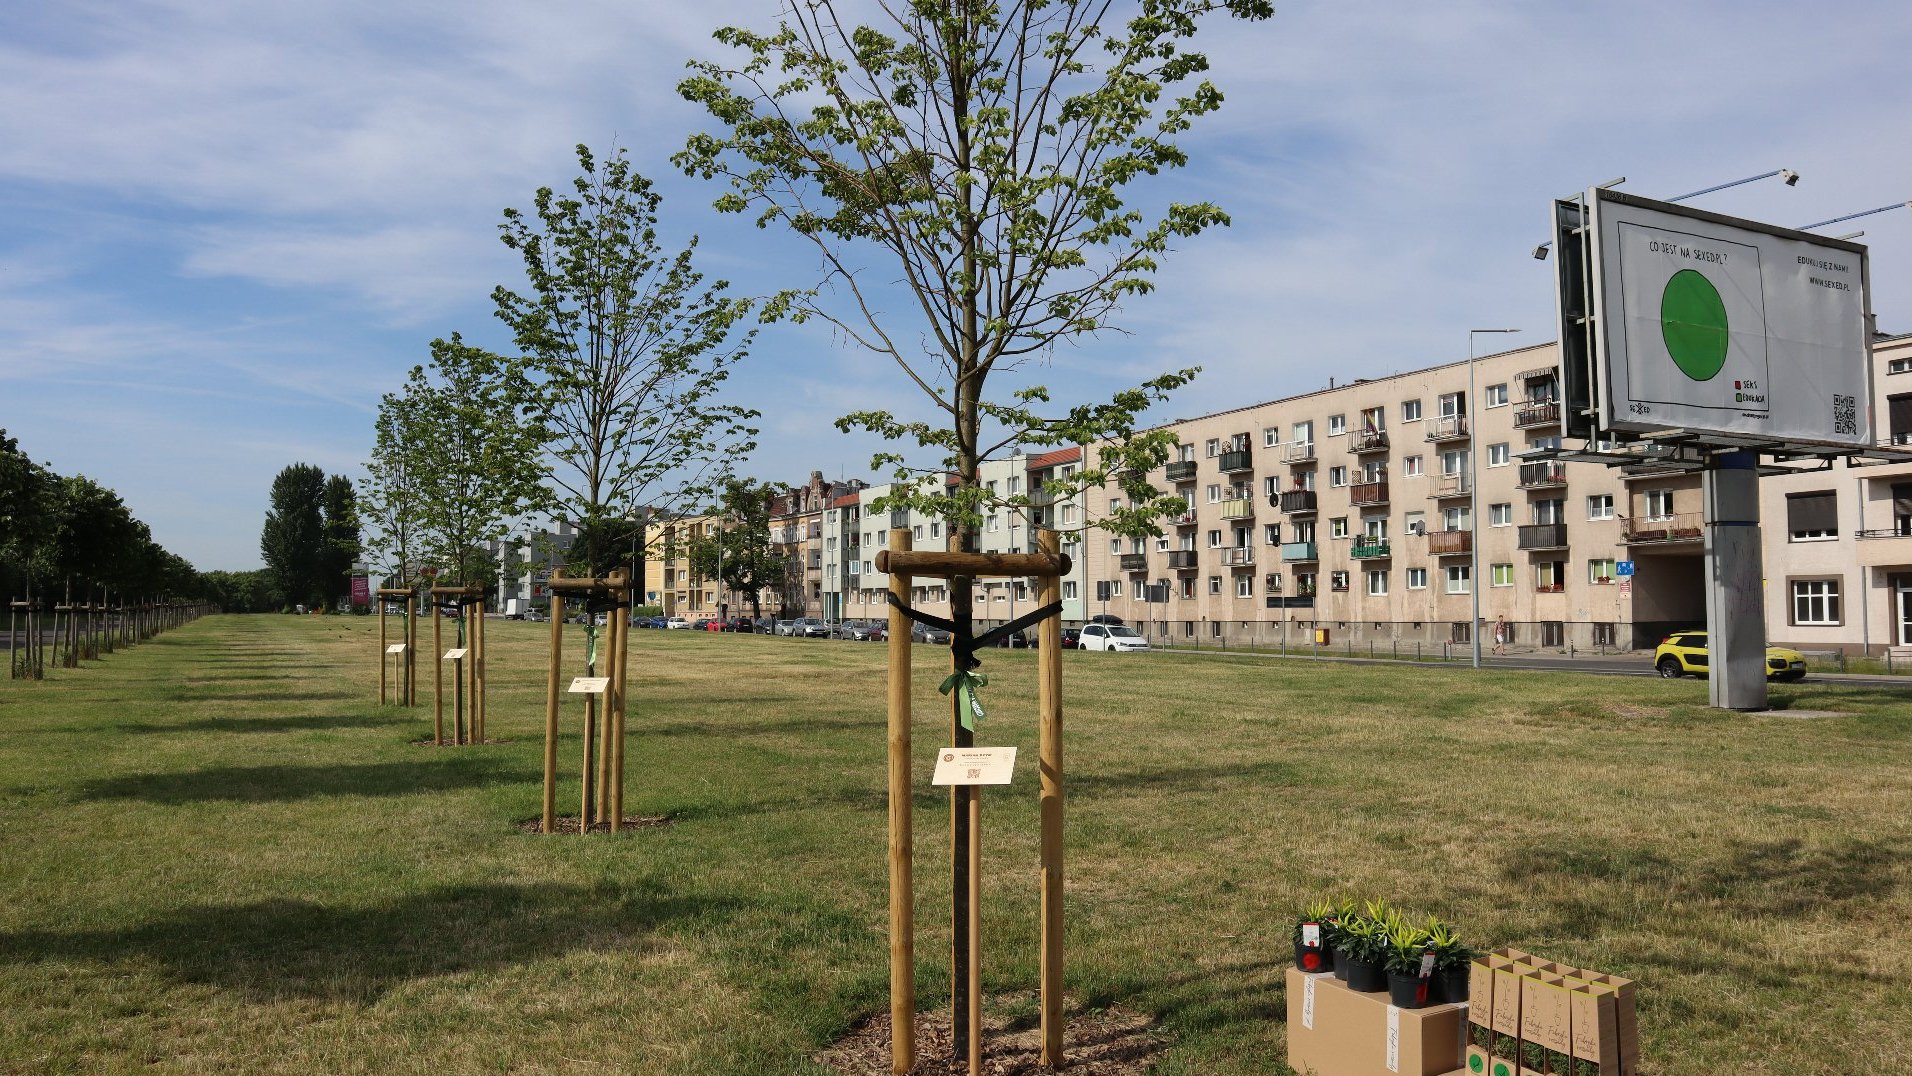 Zdjęcie przedstawia szpaler drzew przy których znajdują się tabliczki. Po prawej strony widać bloki.